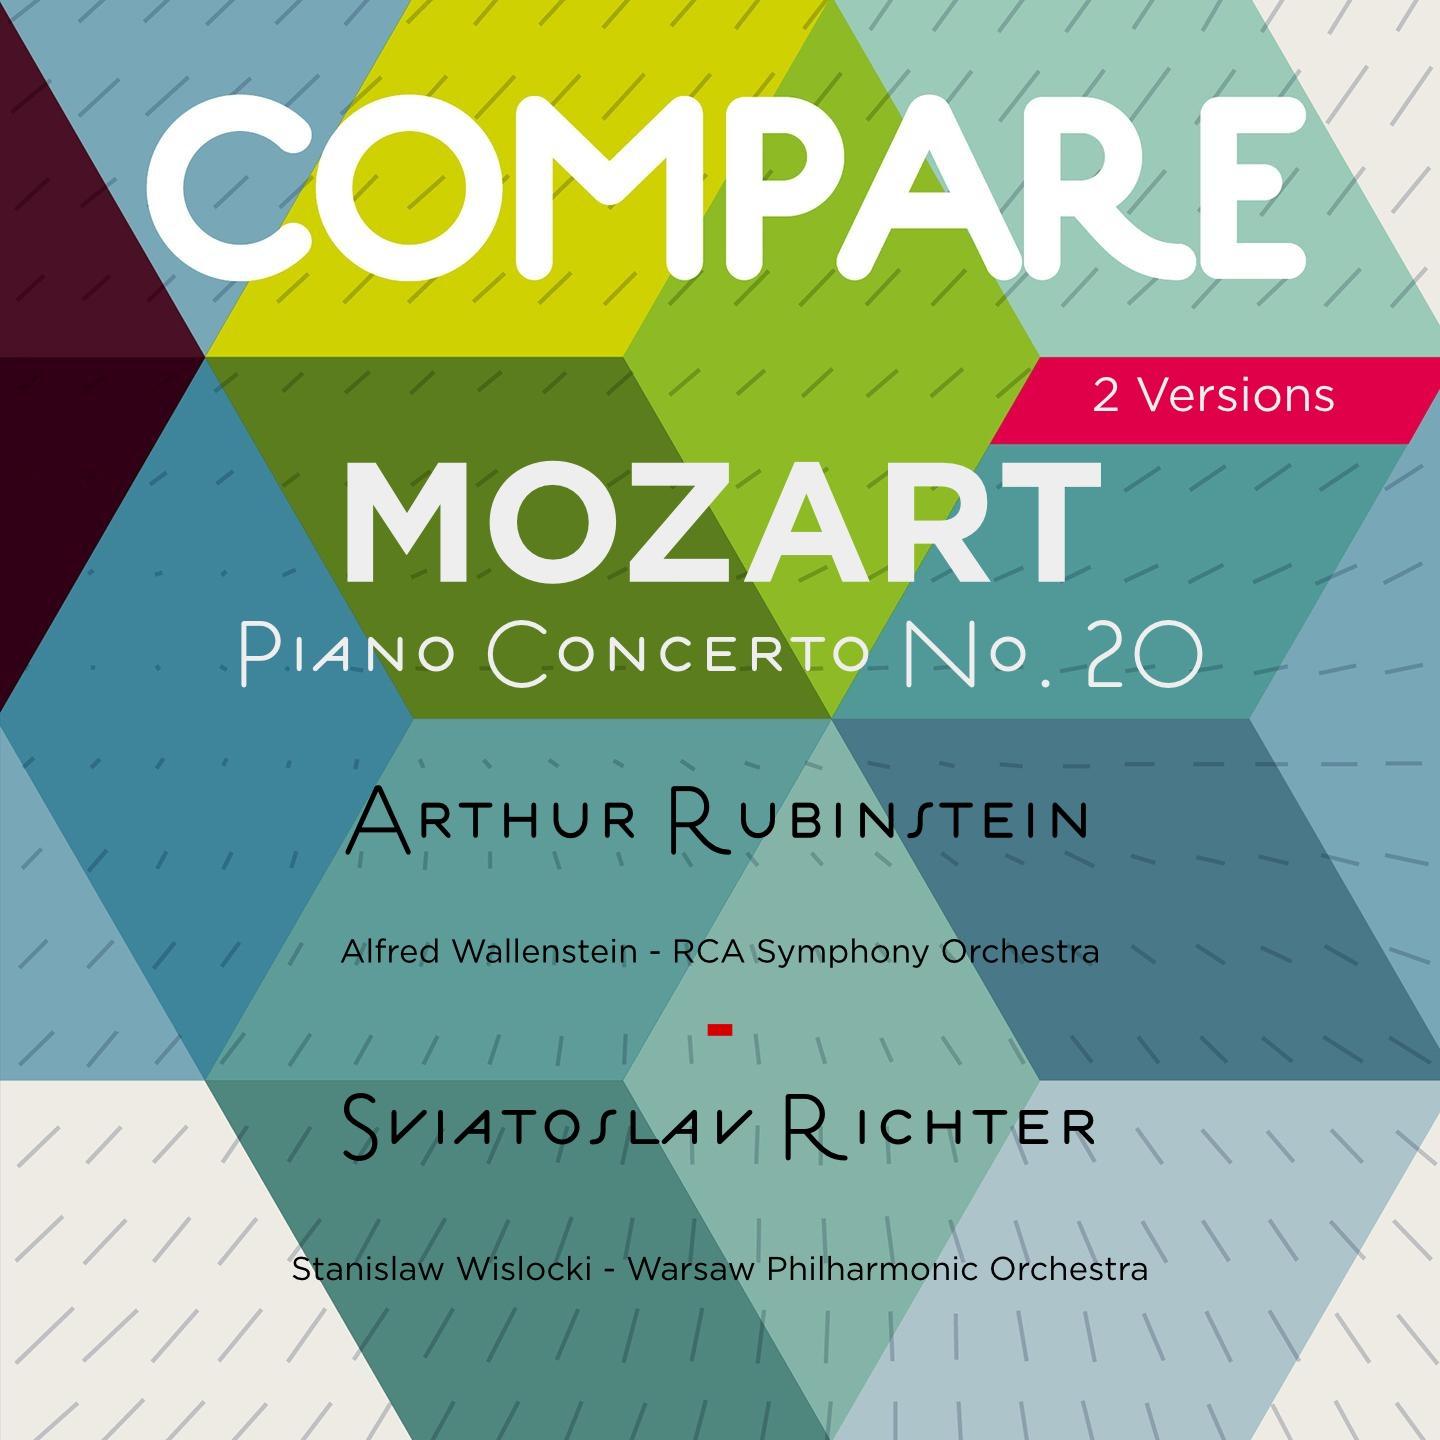 Piano Concerto No. 20 in D Minor, K. 466: II. Romanza